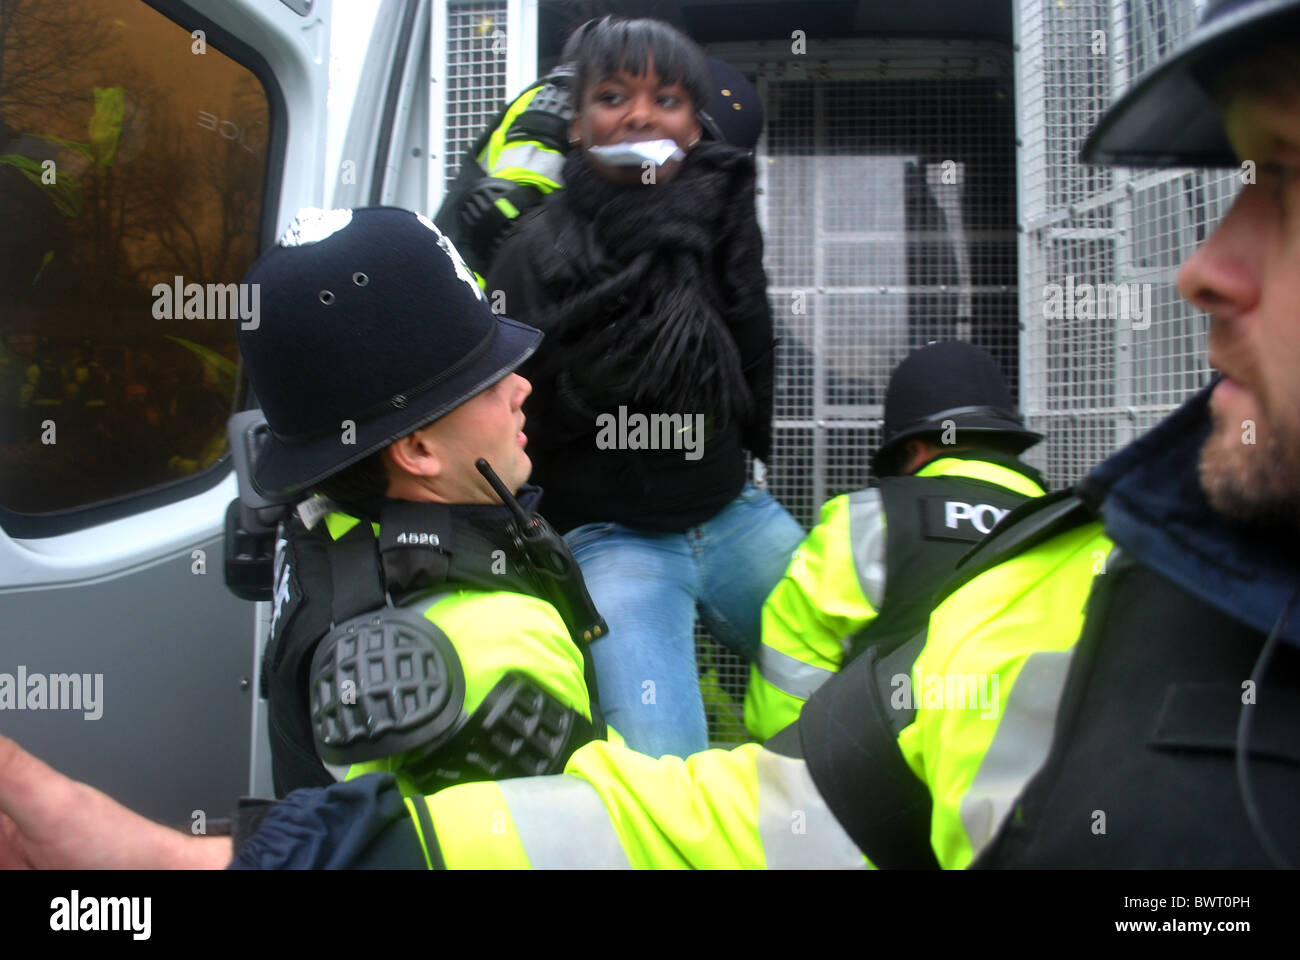 La police arrête un manifestant étudiant à l'Université de Bristol, lors de manifestations contre l'augmentation des frais de scolarité Banque D'Images